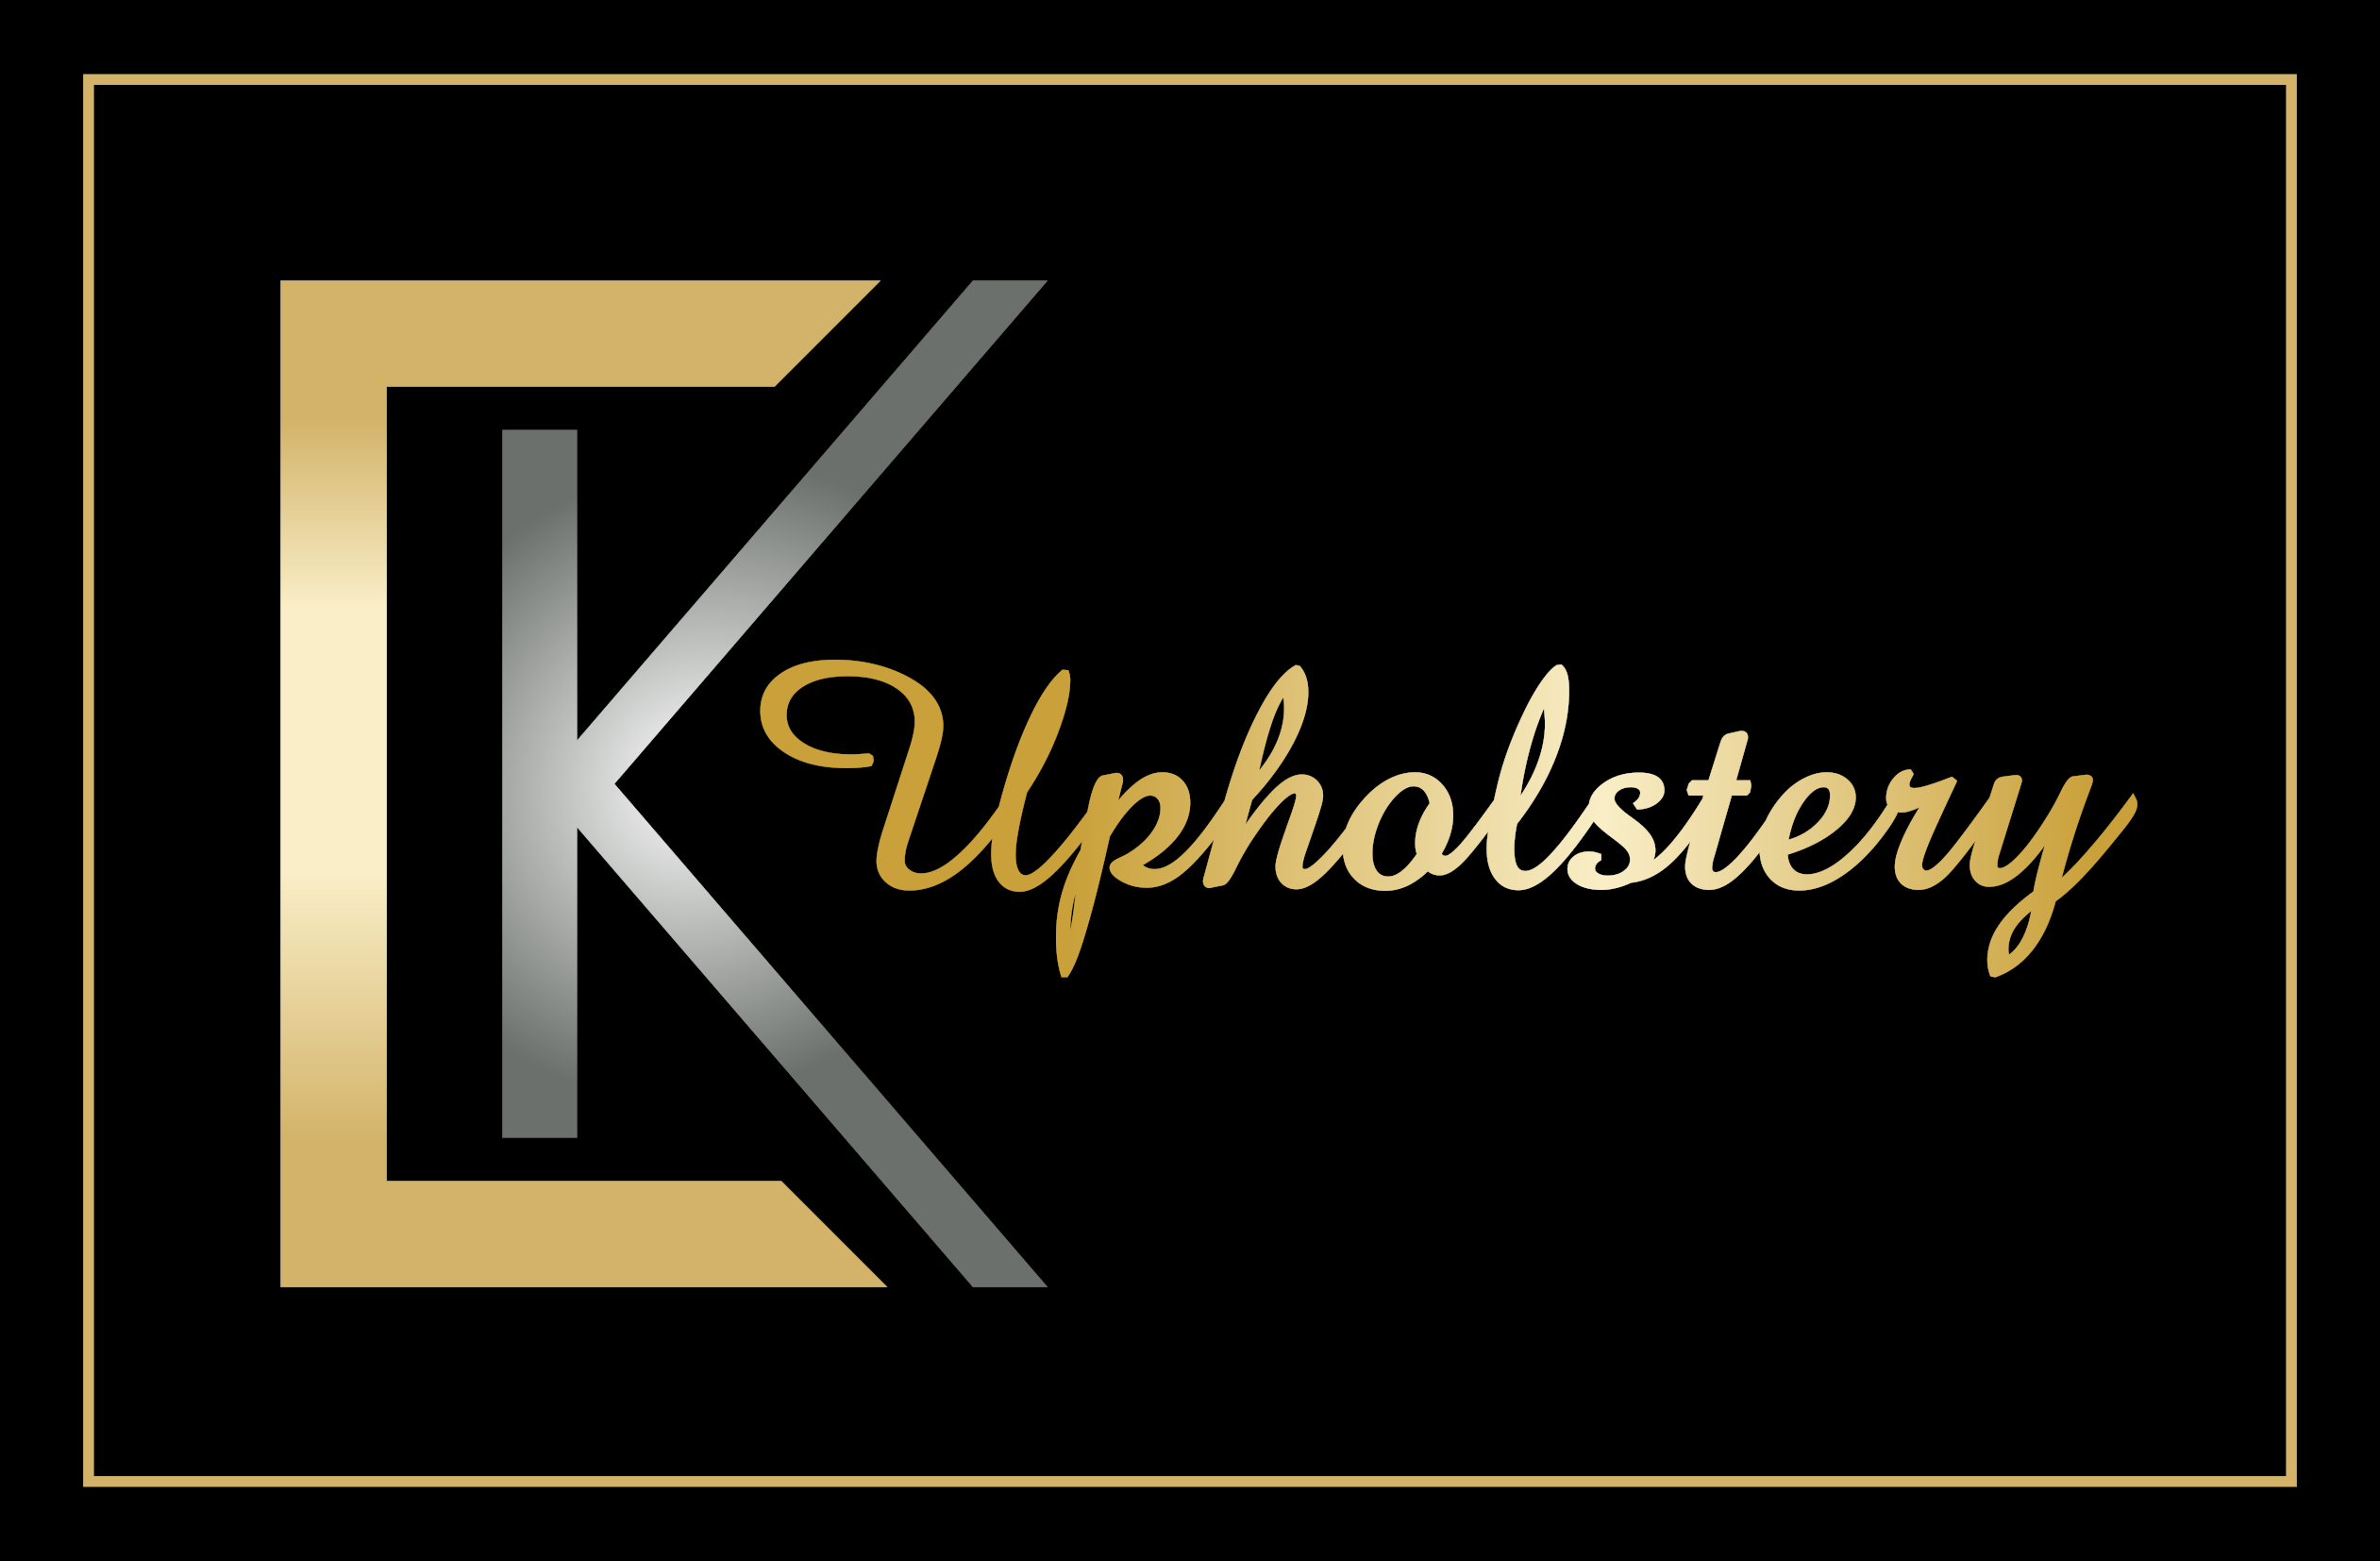 CK Upholstery Logo